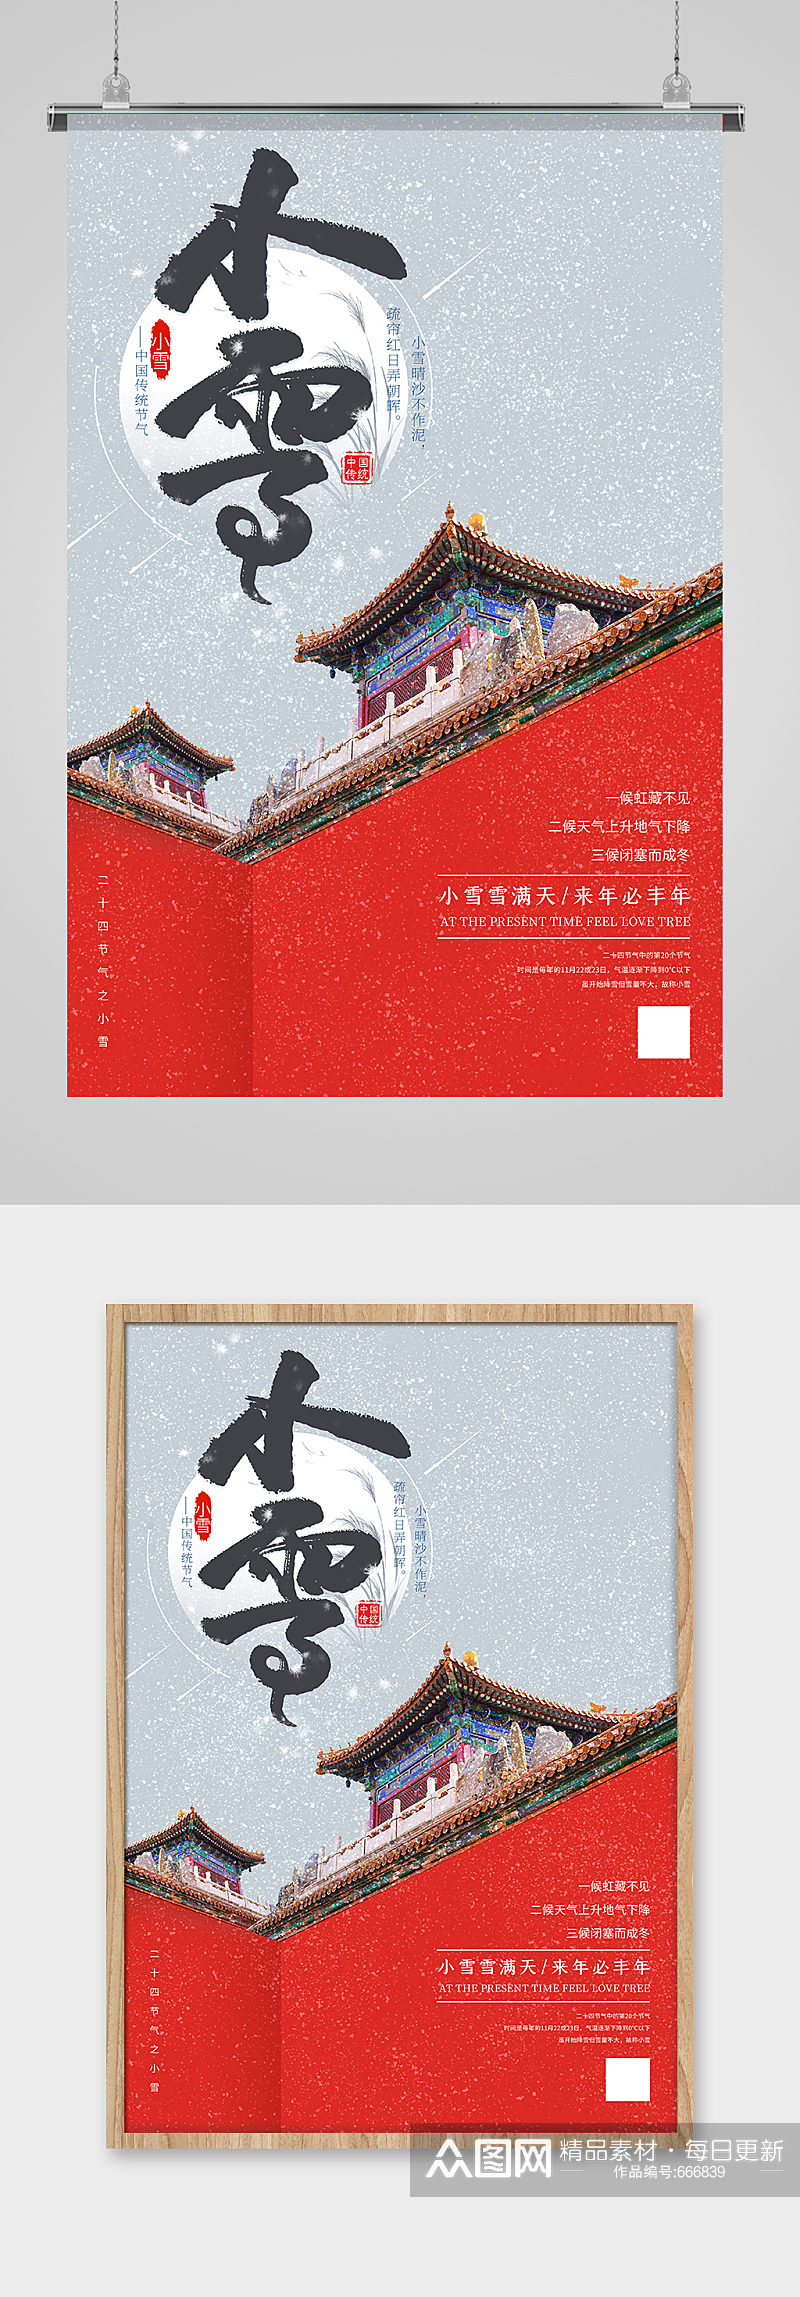 二十四节气之小雪故宫城墙建筑红色创意海报素材